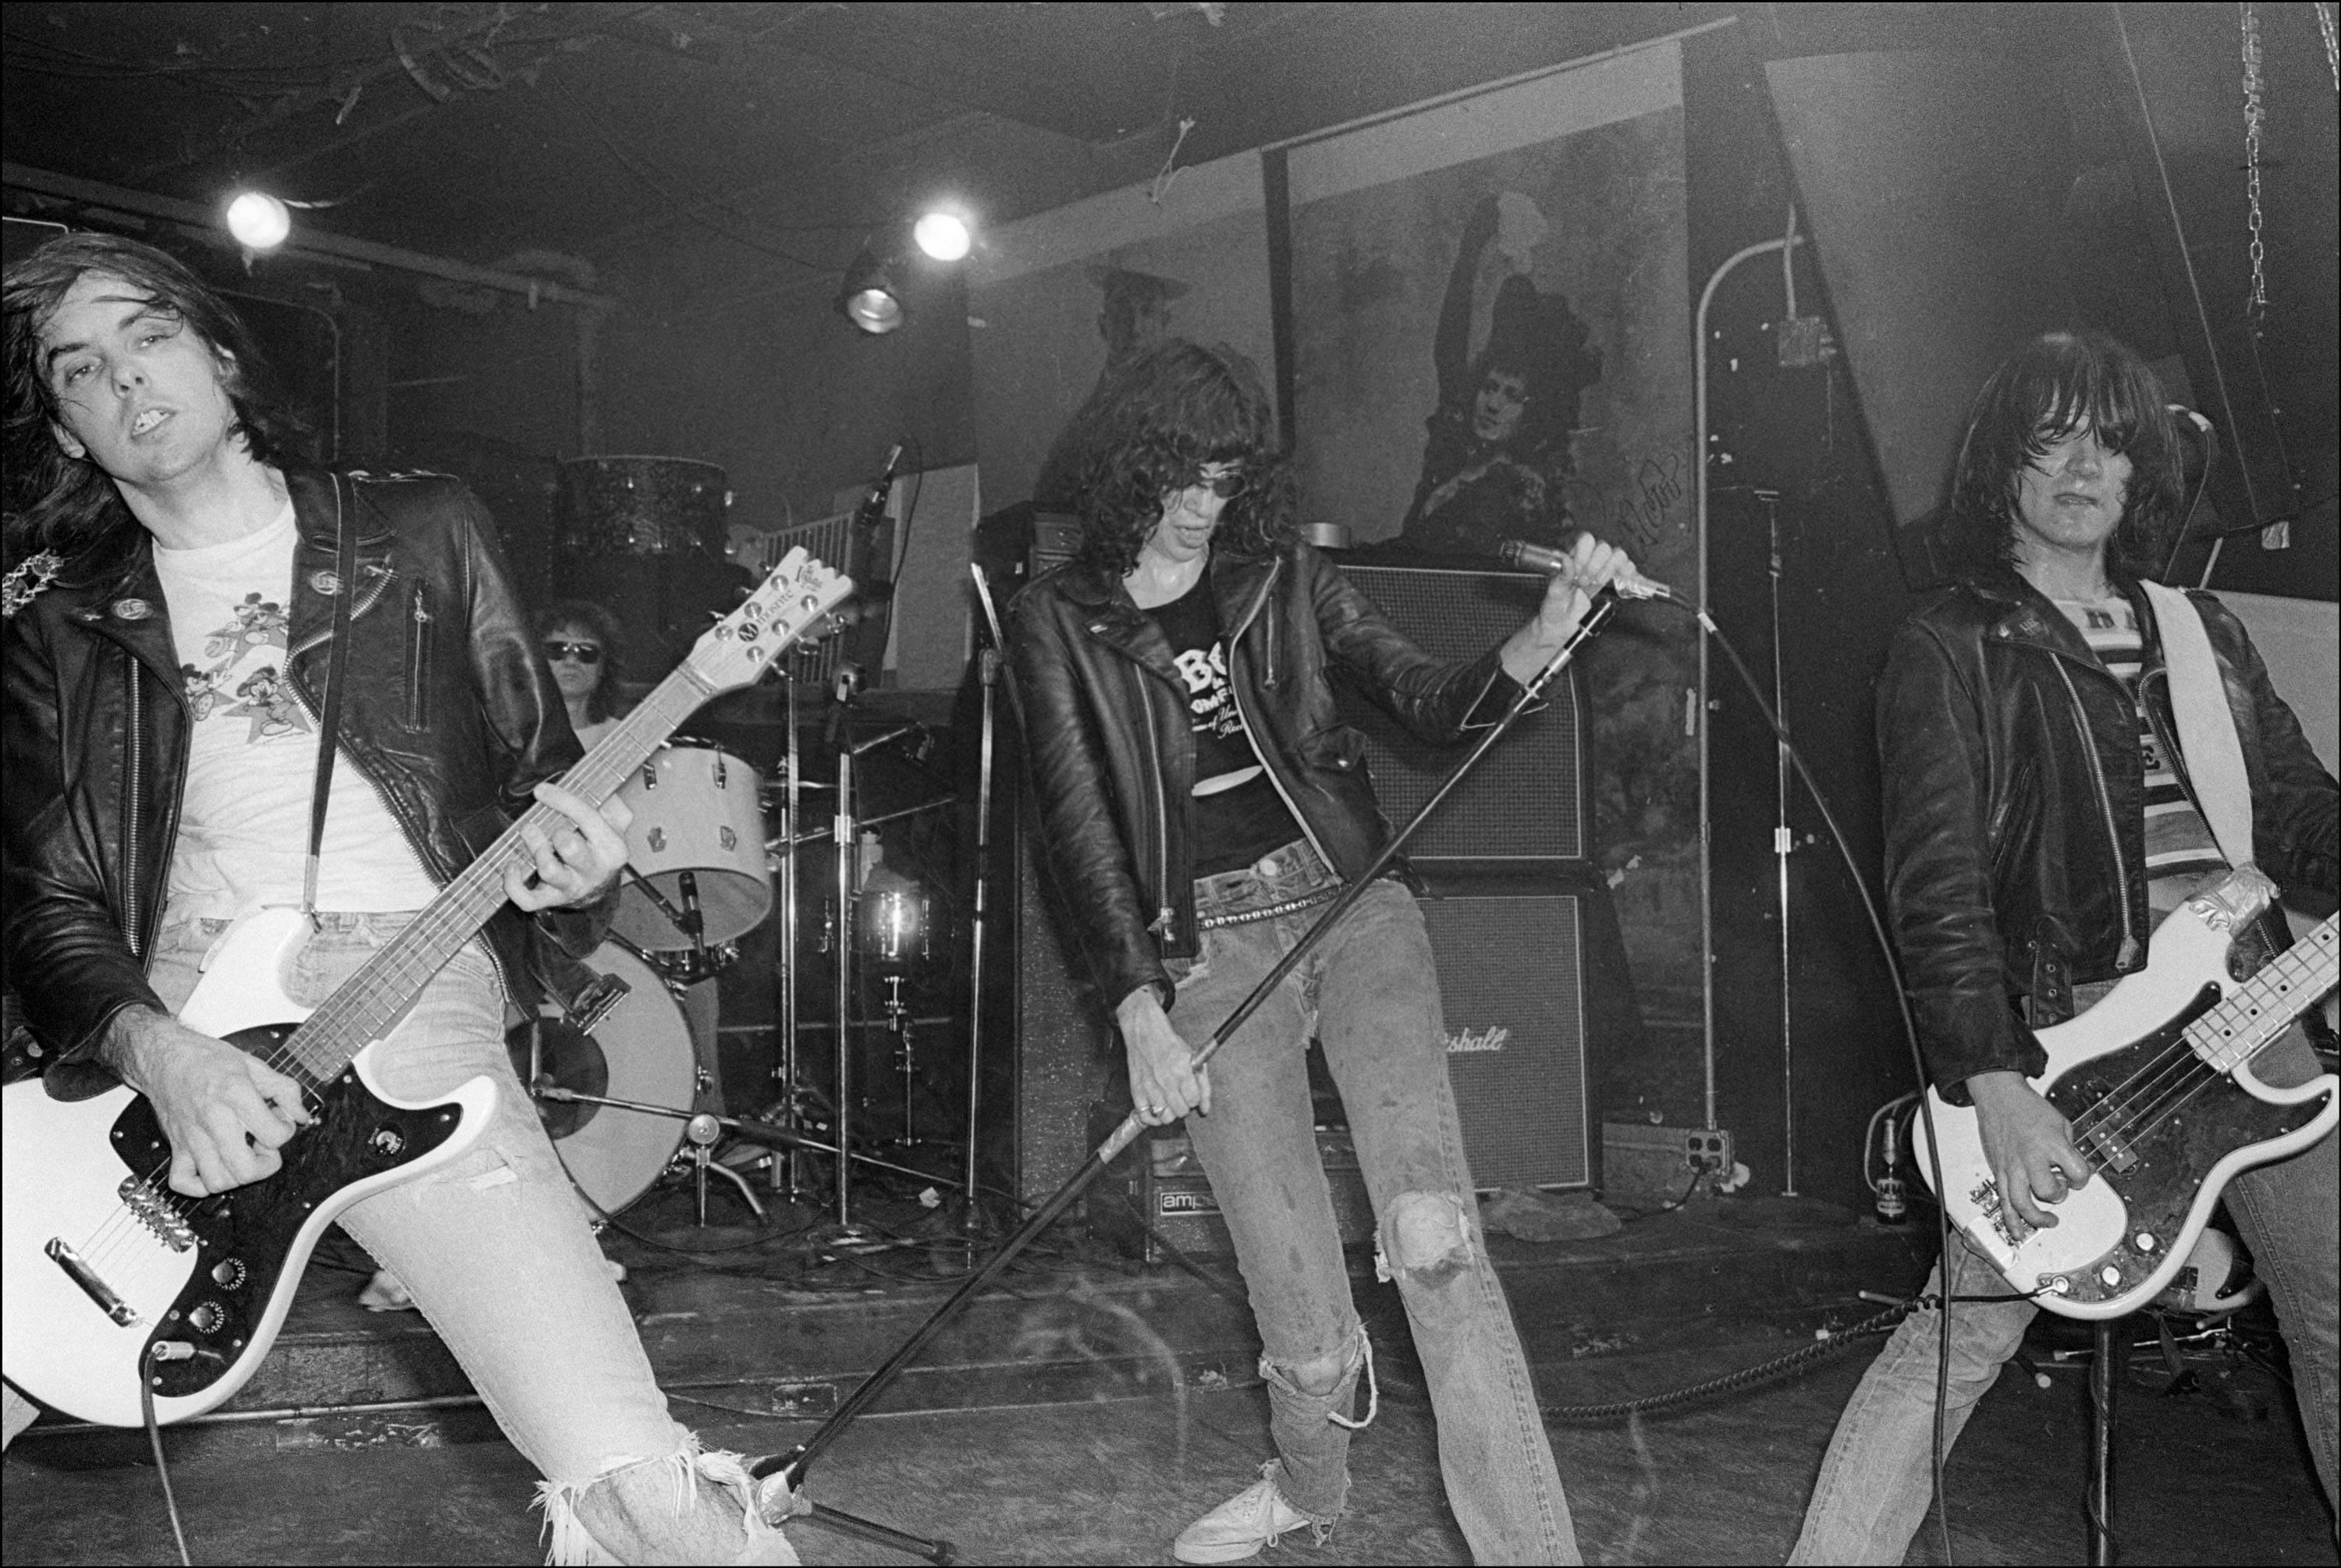 Allan Tannenbaum Black and White Photograph – Die Ramones spielen bei CBGB, 1977